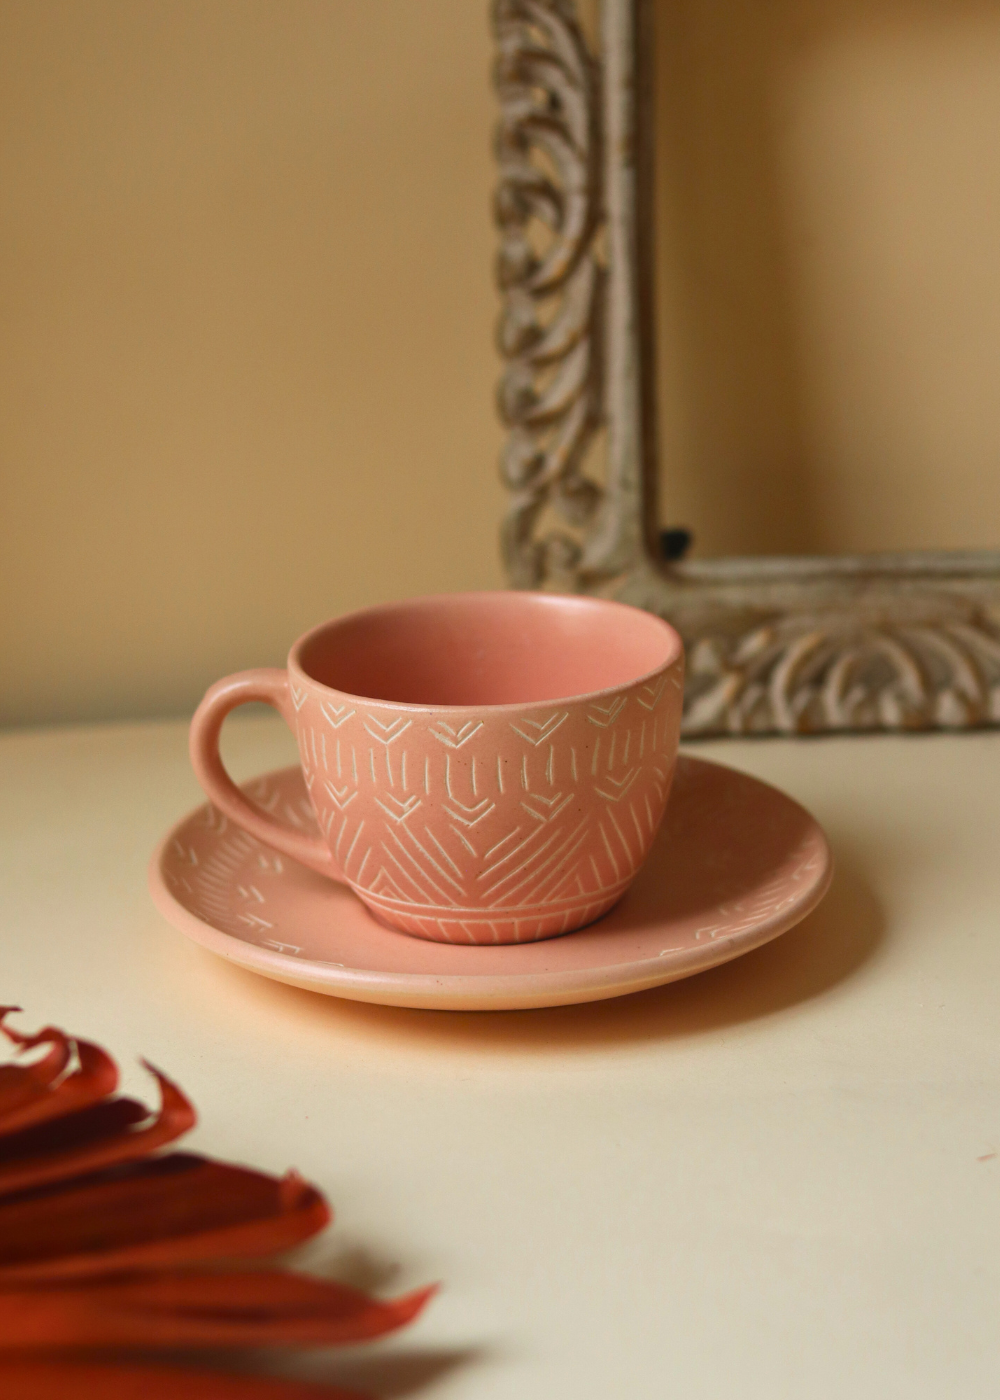 Elegant design handmade ceramic carved cup and saucer set